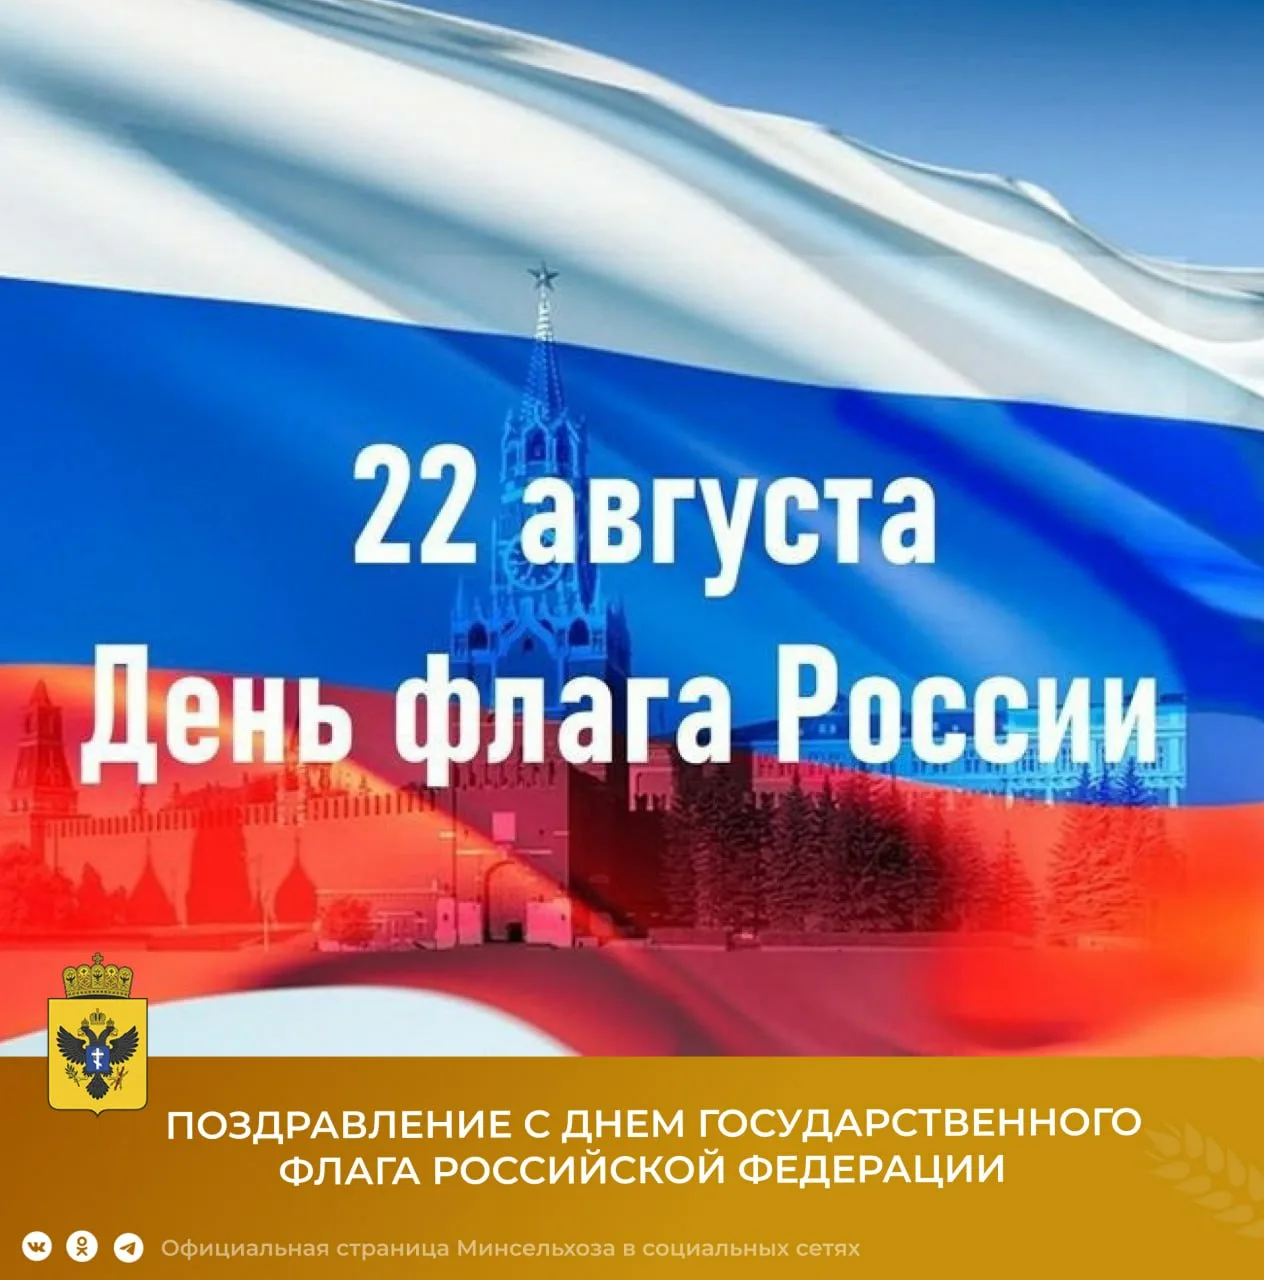 22 мая рф. День флага РФ. День государственного флага Российской Федерации. 22 Августа день государственного флага. День российского флага отмечается.